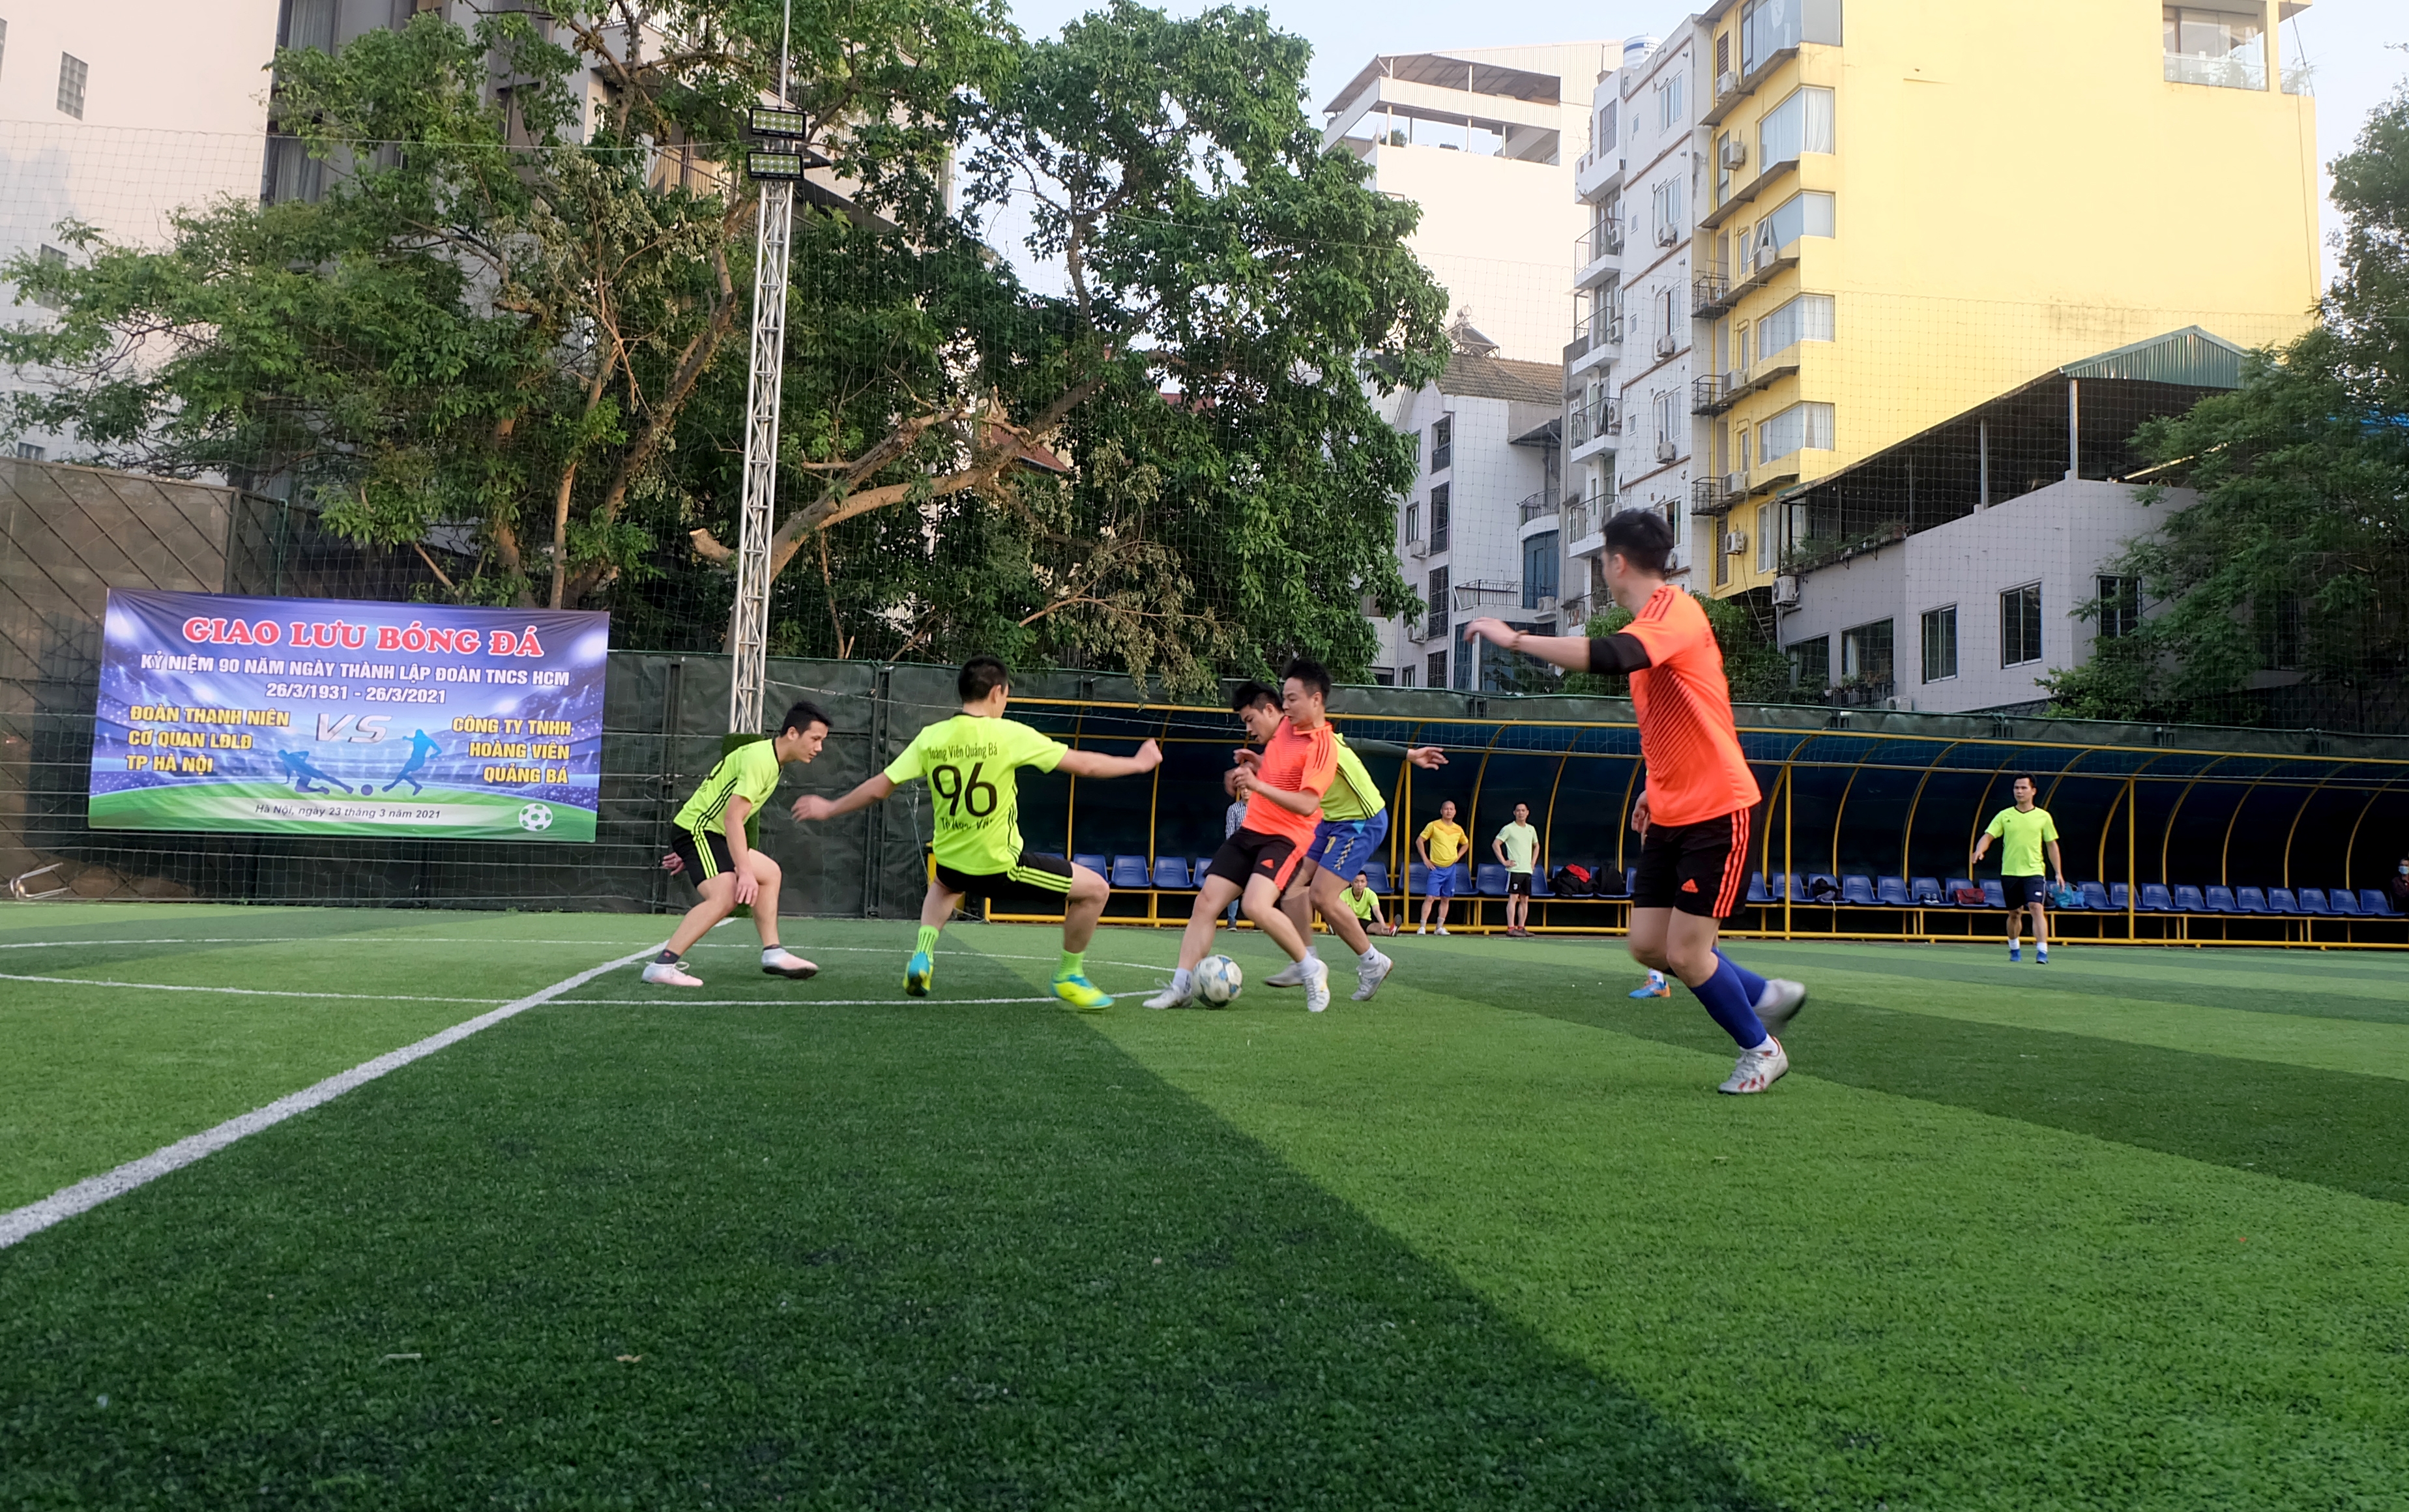 Giao hữu bóng đá giữa Đoàn Thanh niên Cơ quan Liên đoàn Lao động Thành phố và Sedona Hoàng Viên Quảng Bá